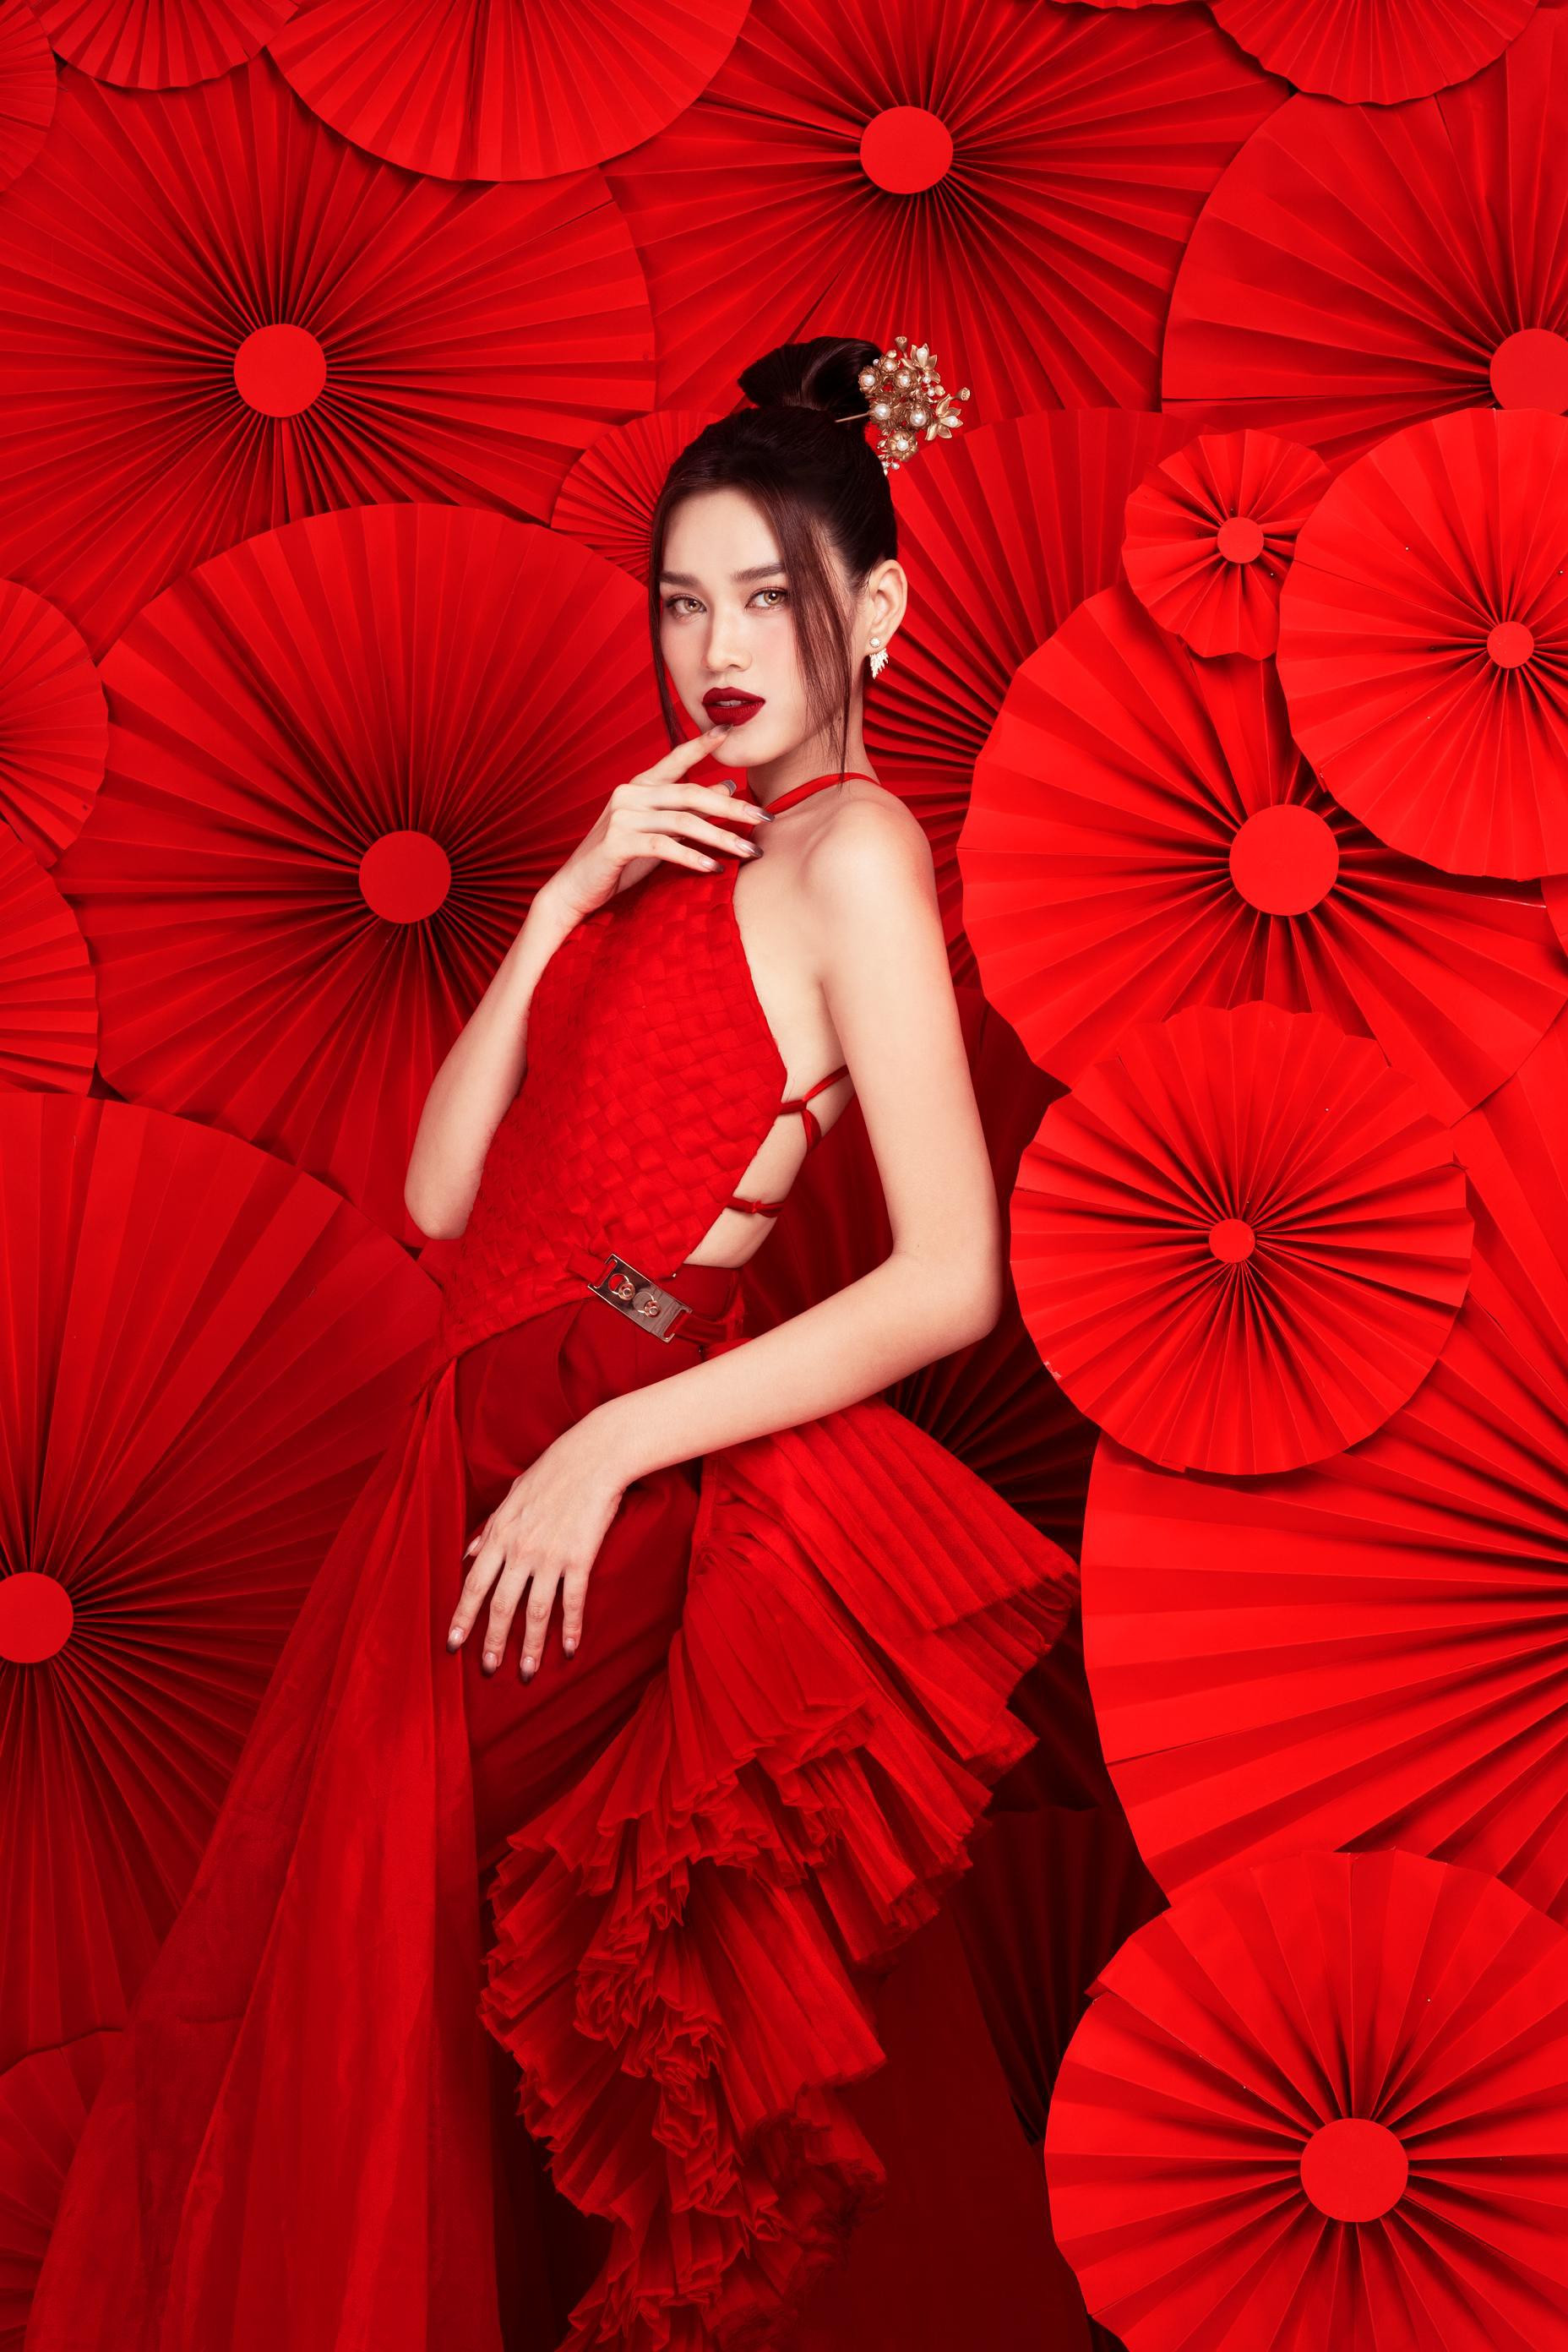 Hoa hậu Đỗ Thị Hà diện yếm đỏ, khoe lưng trần gợi cảm trong bộ ảnh Tết ảnh 2